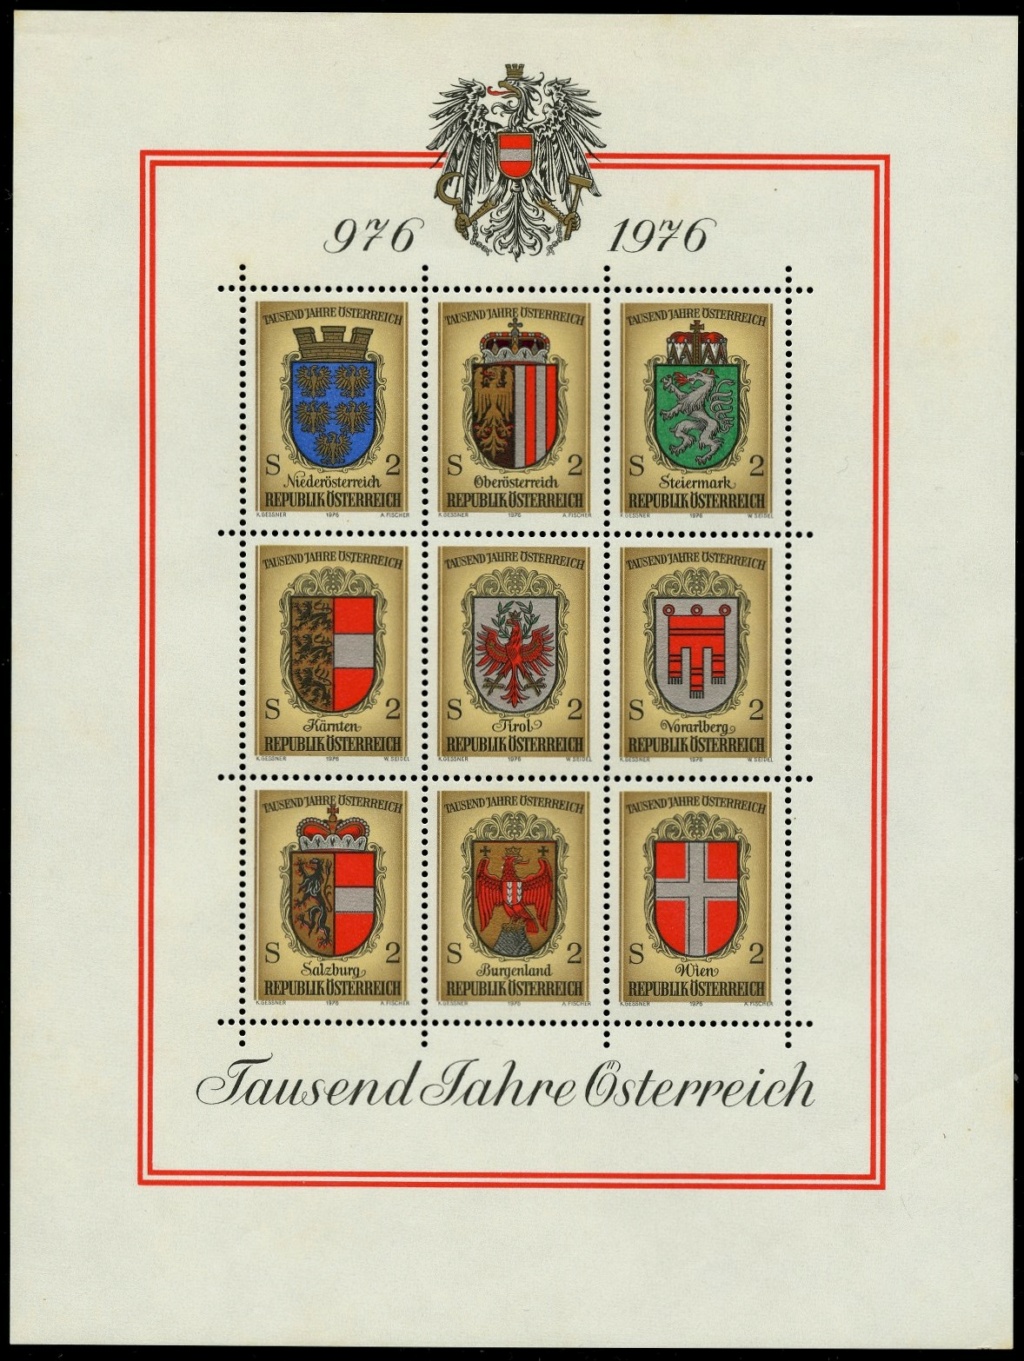 jahre - Österreich, Briefmarken der Jahre 1975 - 1979 Ank_1549